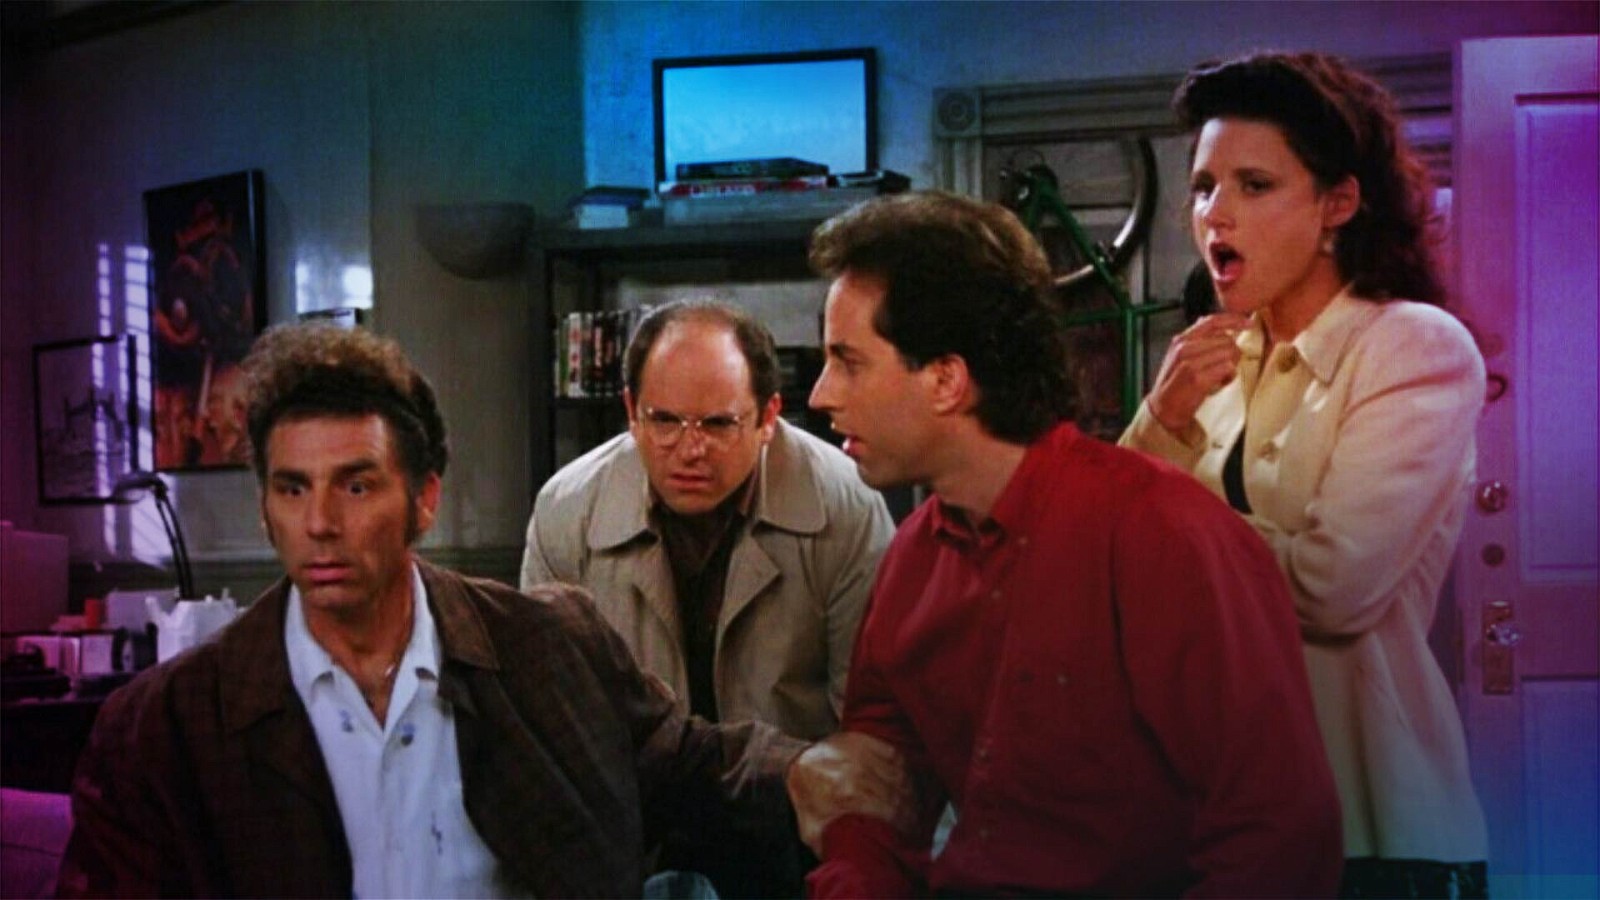 A still from Seinfeld